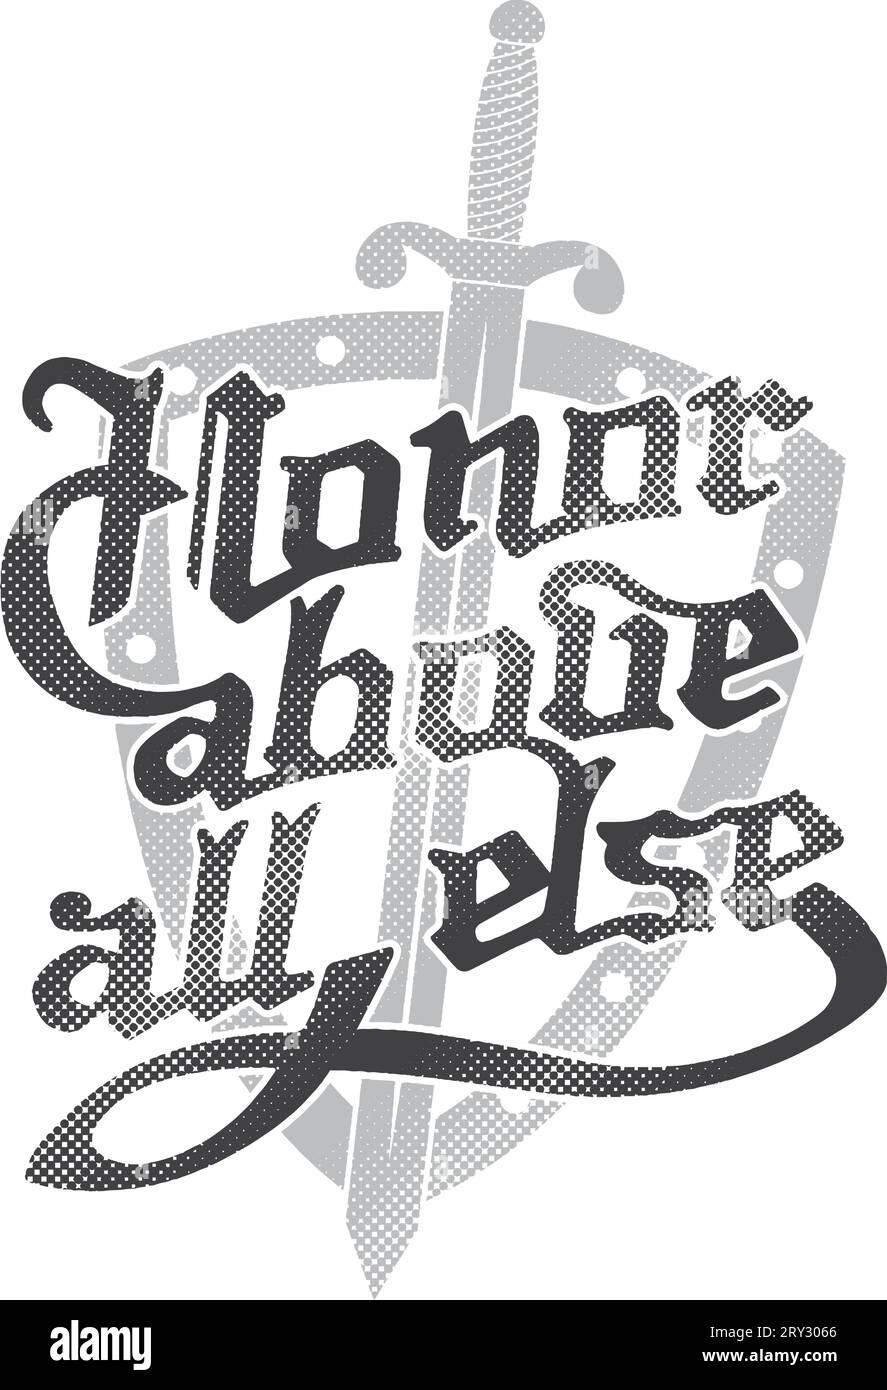 "Ehre über alles andere", Schild und Schwert. Handschrift Gothic Design für T-Shirt, Poster... Halbtonstruktur. Weißer Hintergrund. Stock Vektor